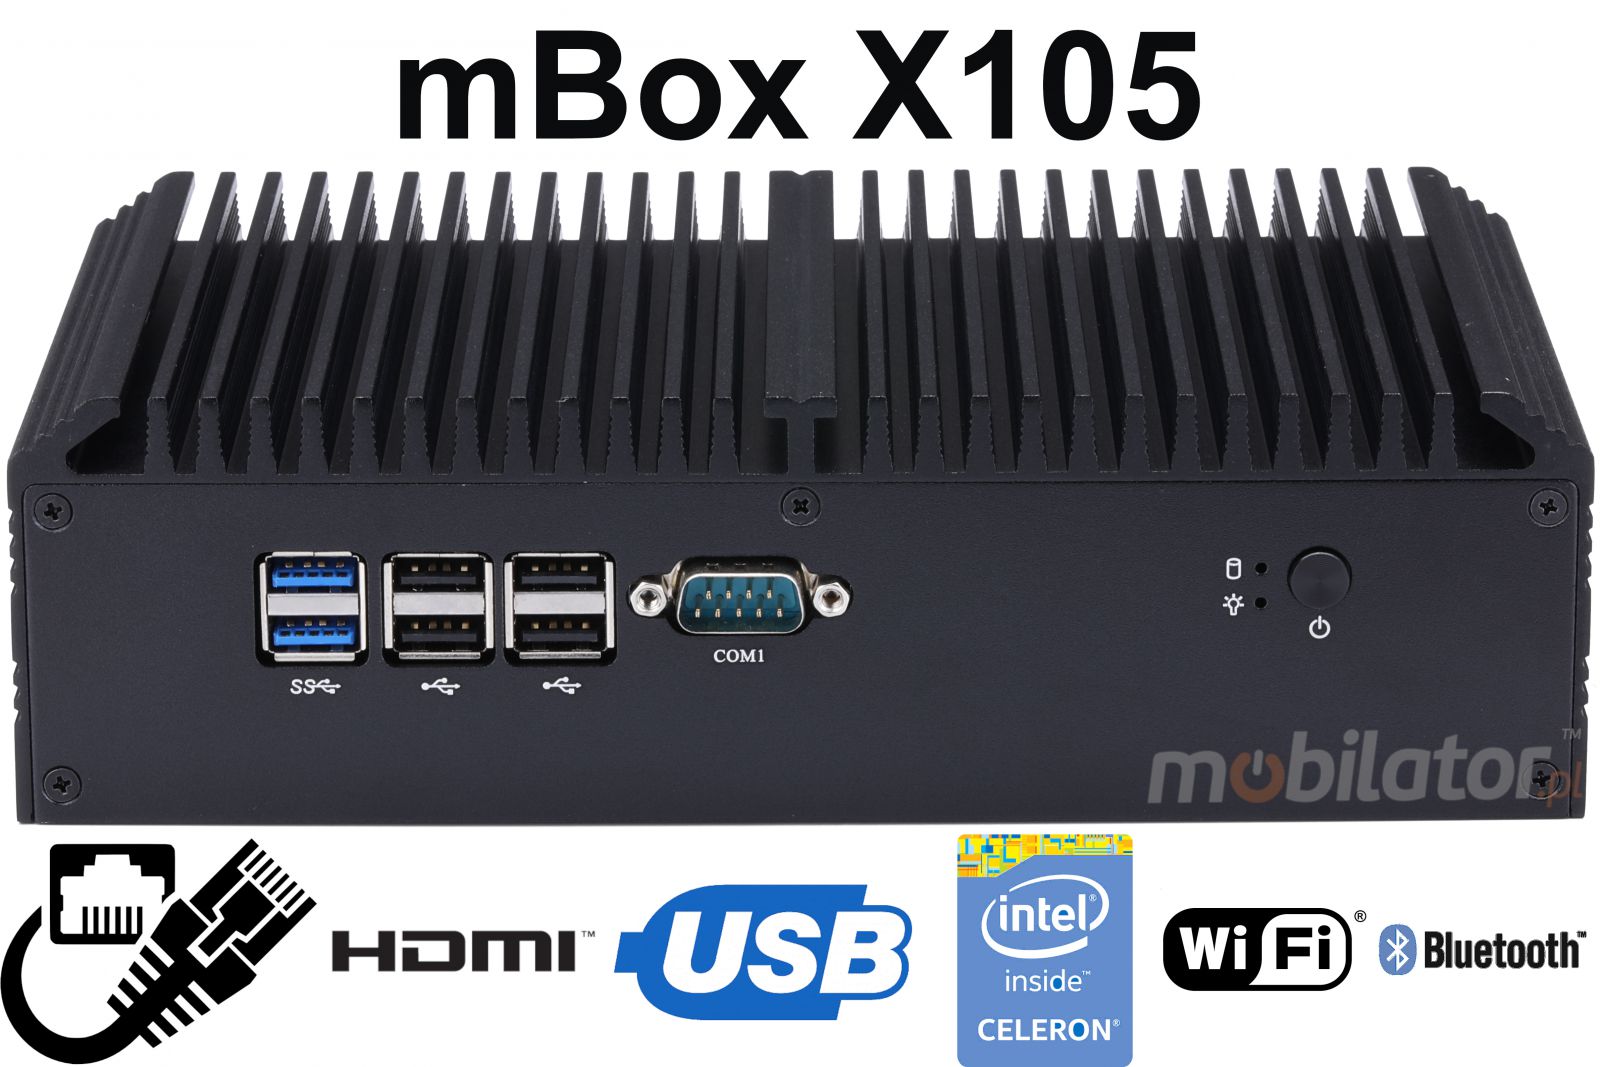 mBox X105 v.6 - wytrzymaly Mini PC z dyskiem HDD o pojemnoci 500GB / 16GB RAM / Wifi + Bluetooth / 2 porty HDMI (6x RS-232, 4x USB 3.0) - Obrazek tytuowy